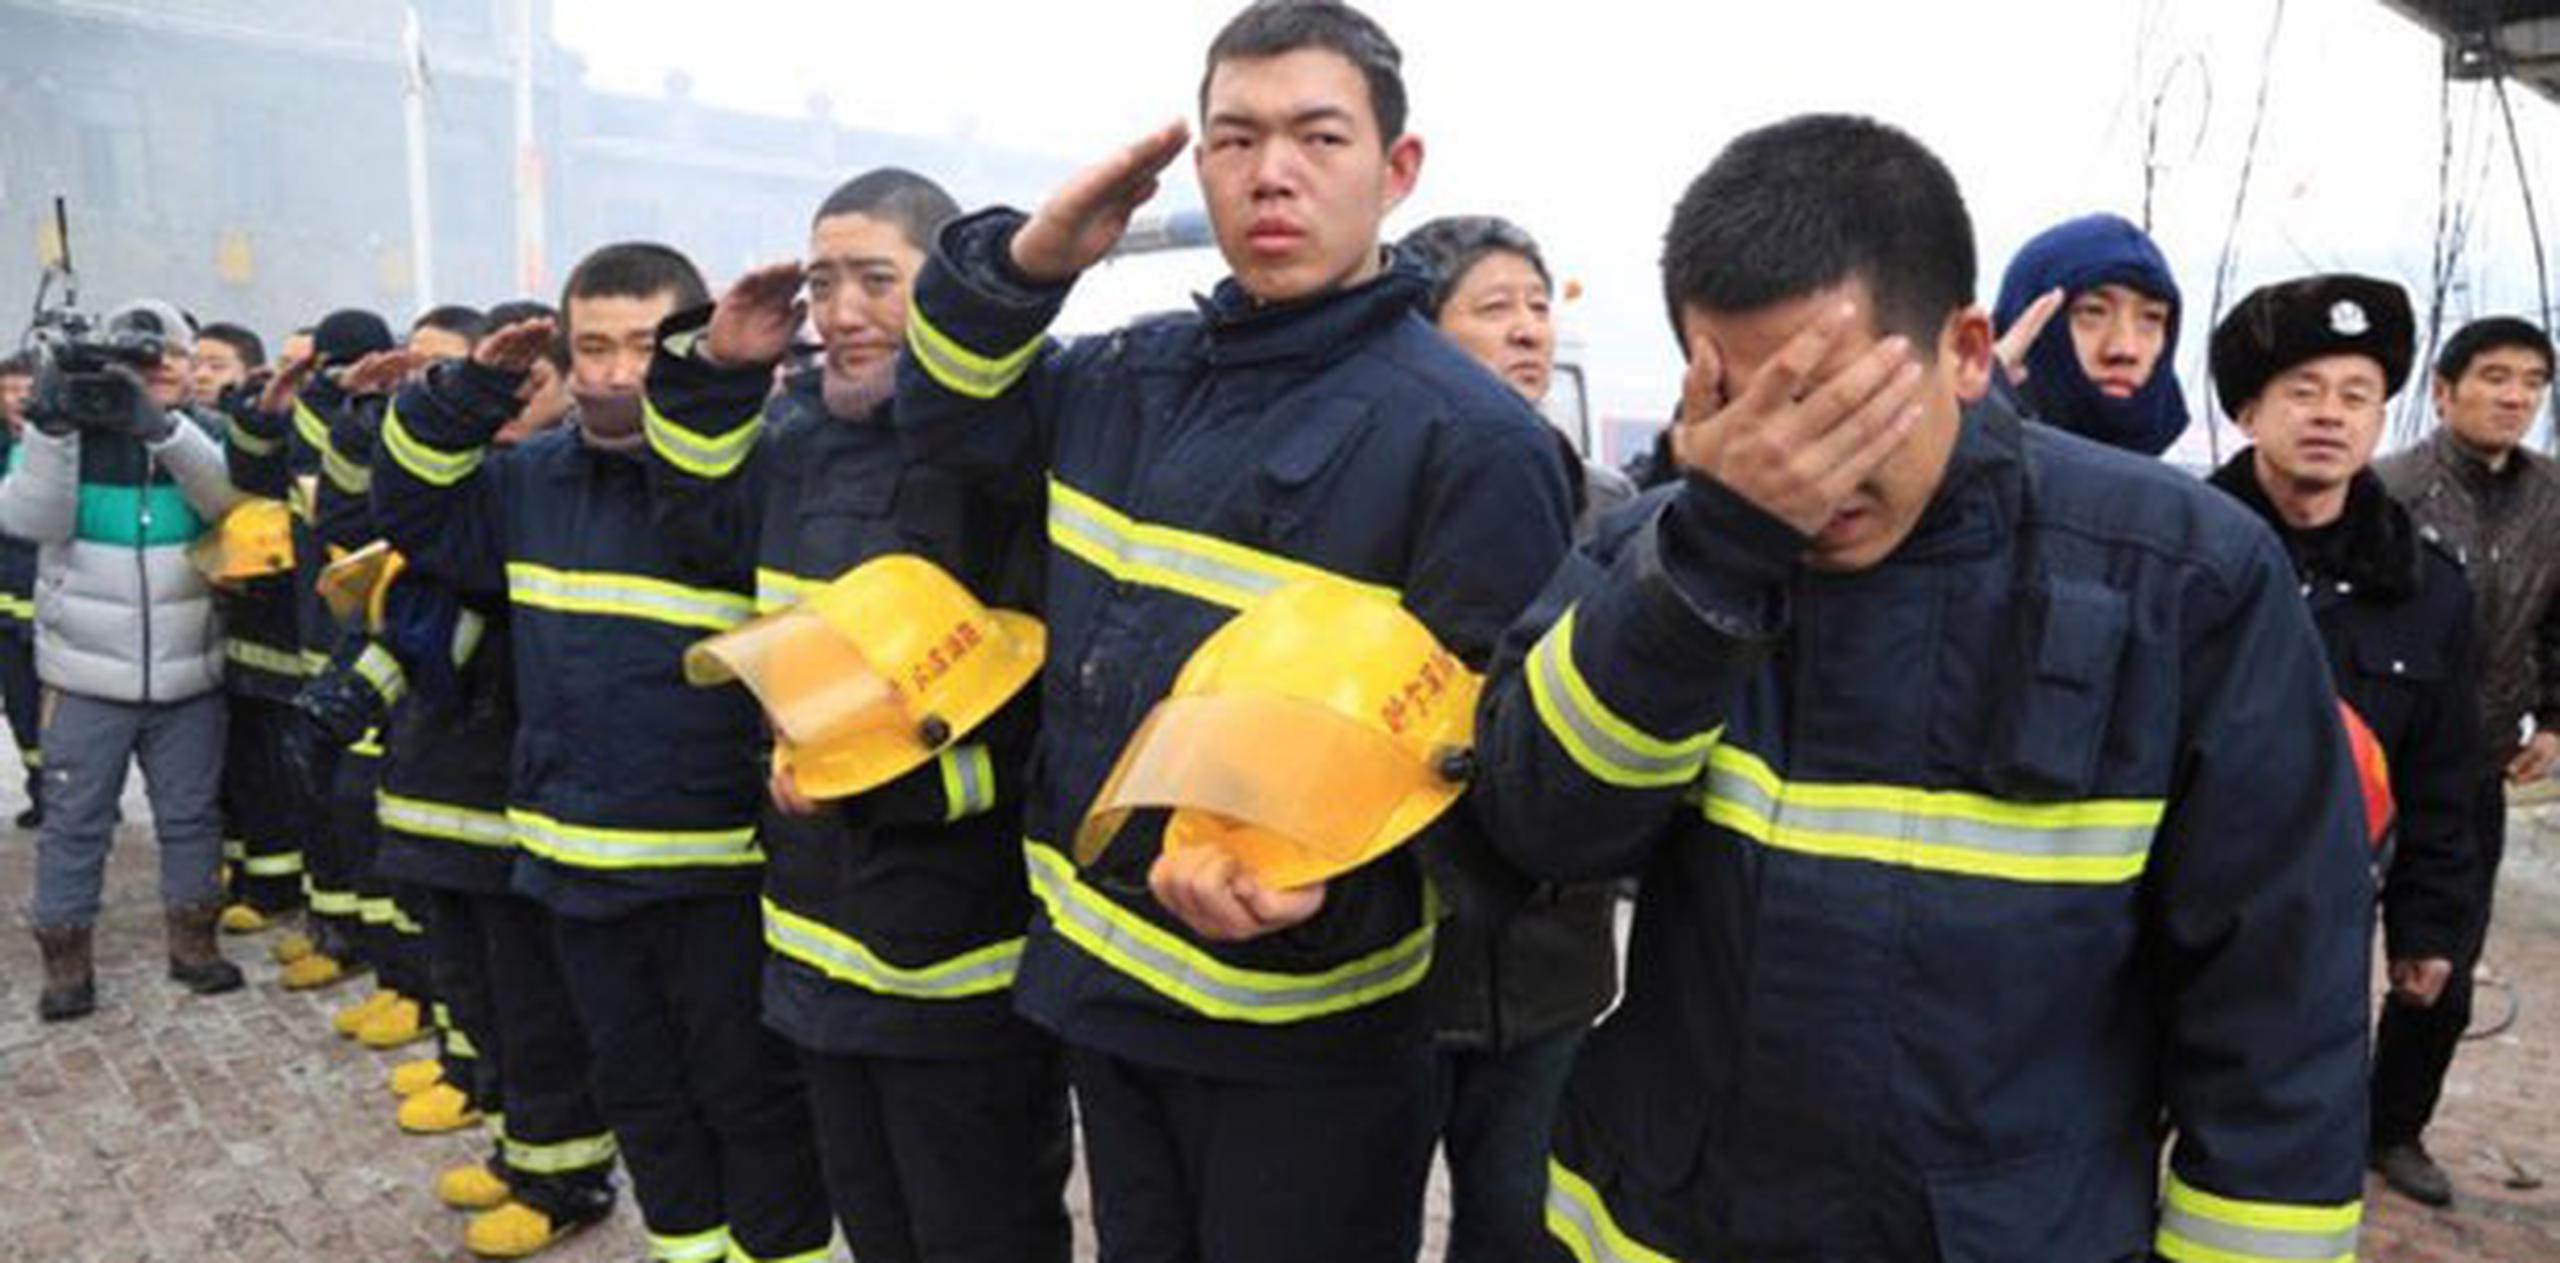 Las labores de rescate de los bomberos que quedaron bajo los escombros se prolongaron hasta la tarde de hoy, sábado, mientras que el fuego continúa sin poder ser extinguido. (AFP)